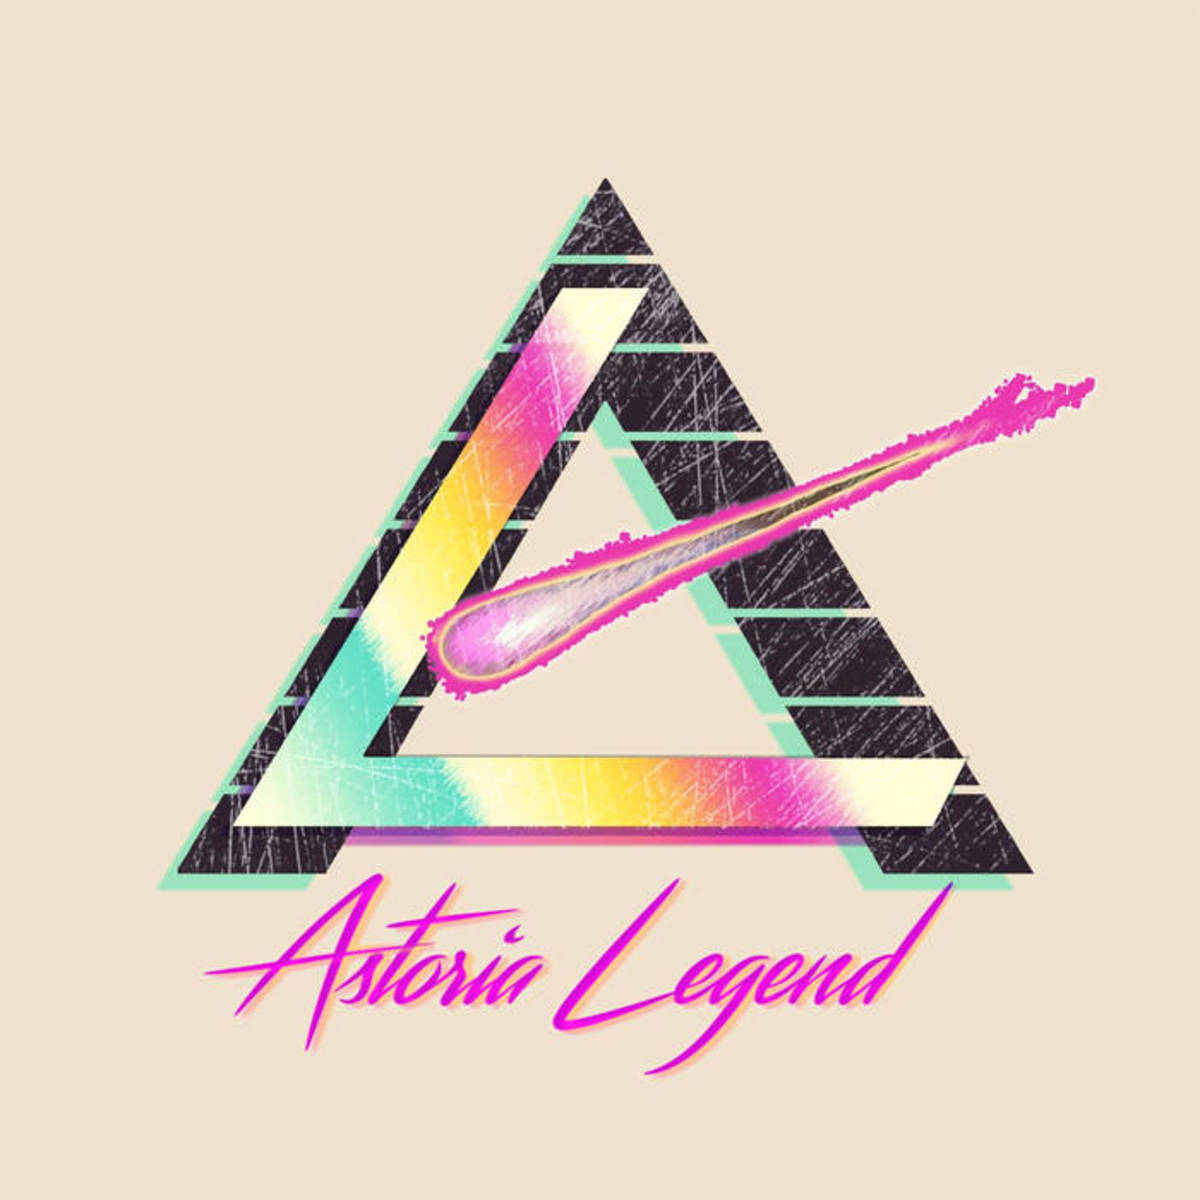 synth-album-review-astoria-legend-by-astoria-legend